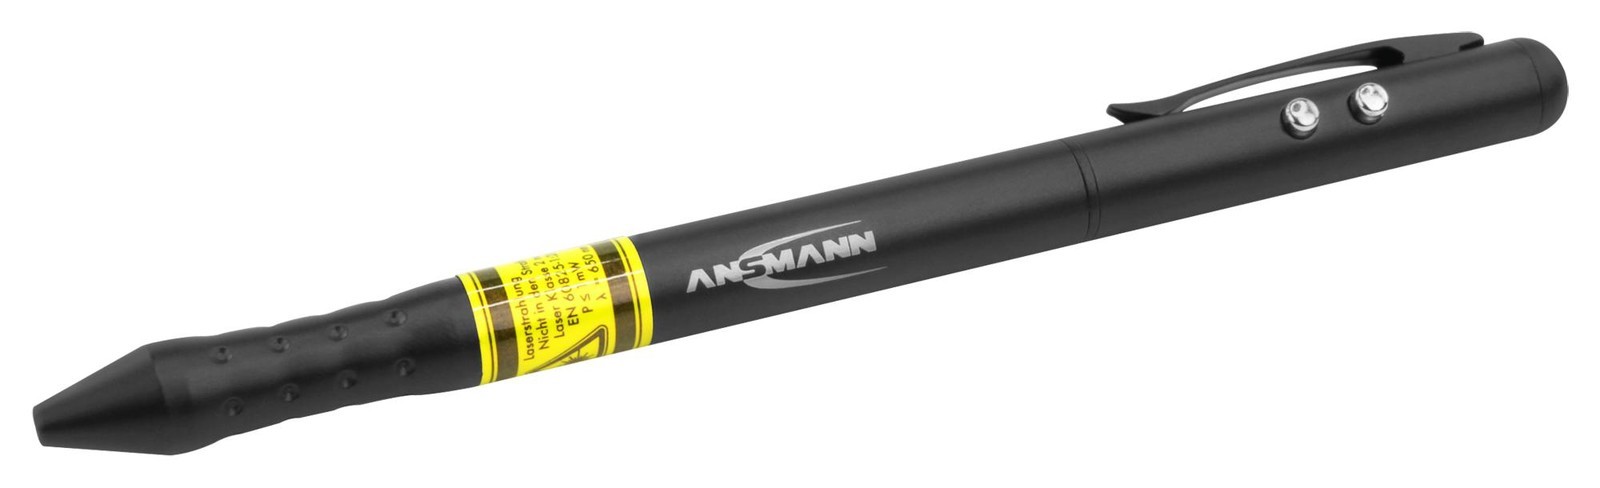 Ansmann 1600-0269 Laser Pointer 4-In-1, Led Penlight